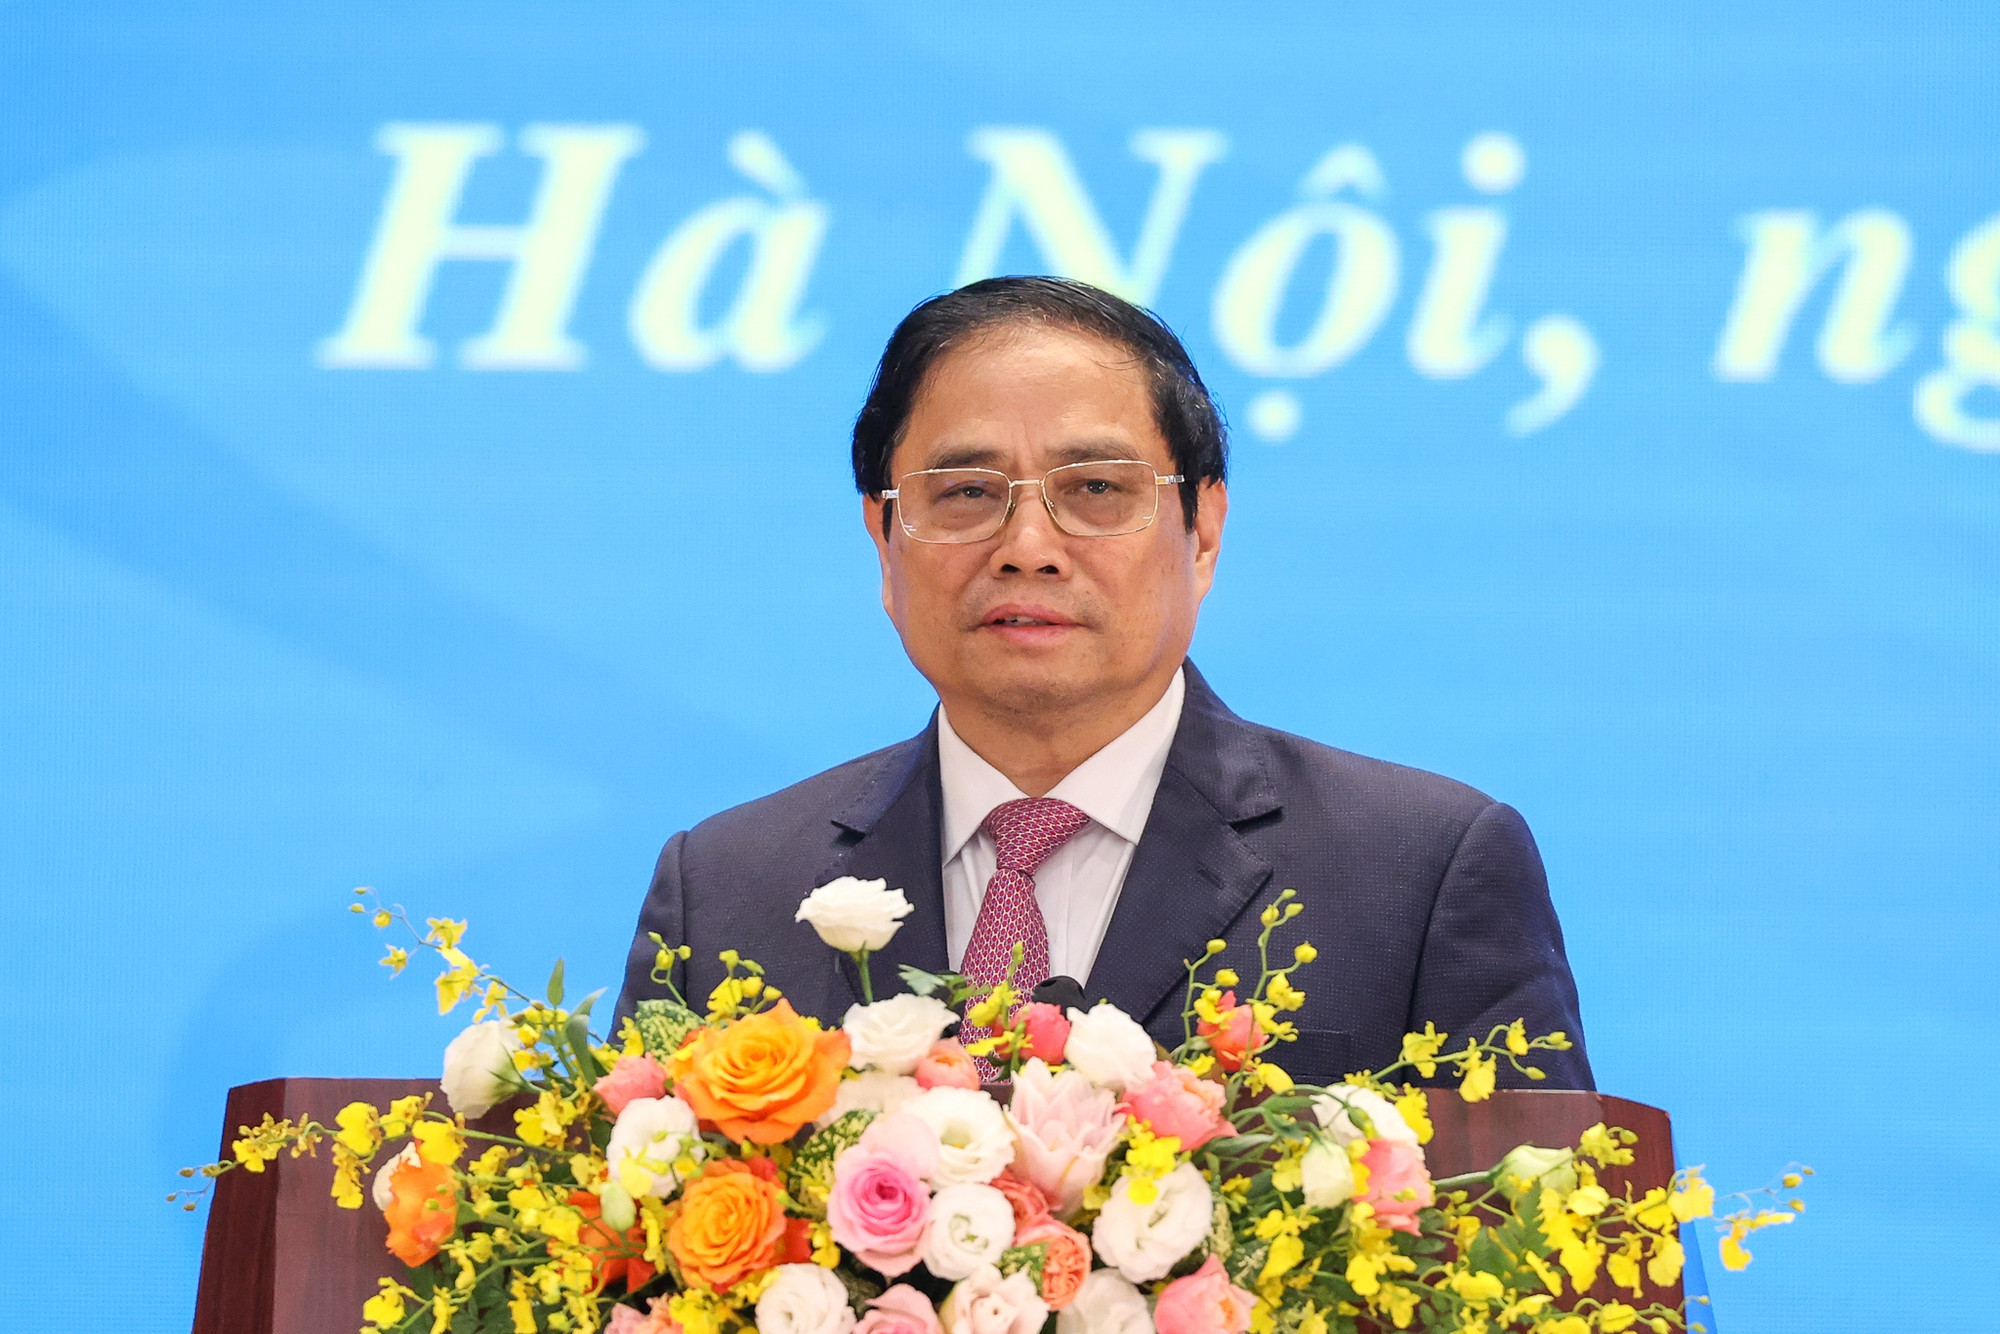 Thủ tướng Chính phủ đối thoại với Phụ nữ Việt Nam về thúc đẩy bình đẳng giới và phát huy vai trò của phụ nữ trong phát triển kinh tế - xã hội